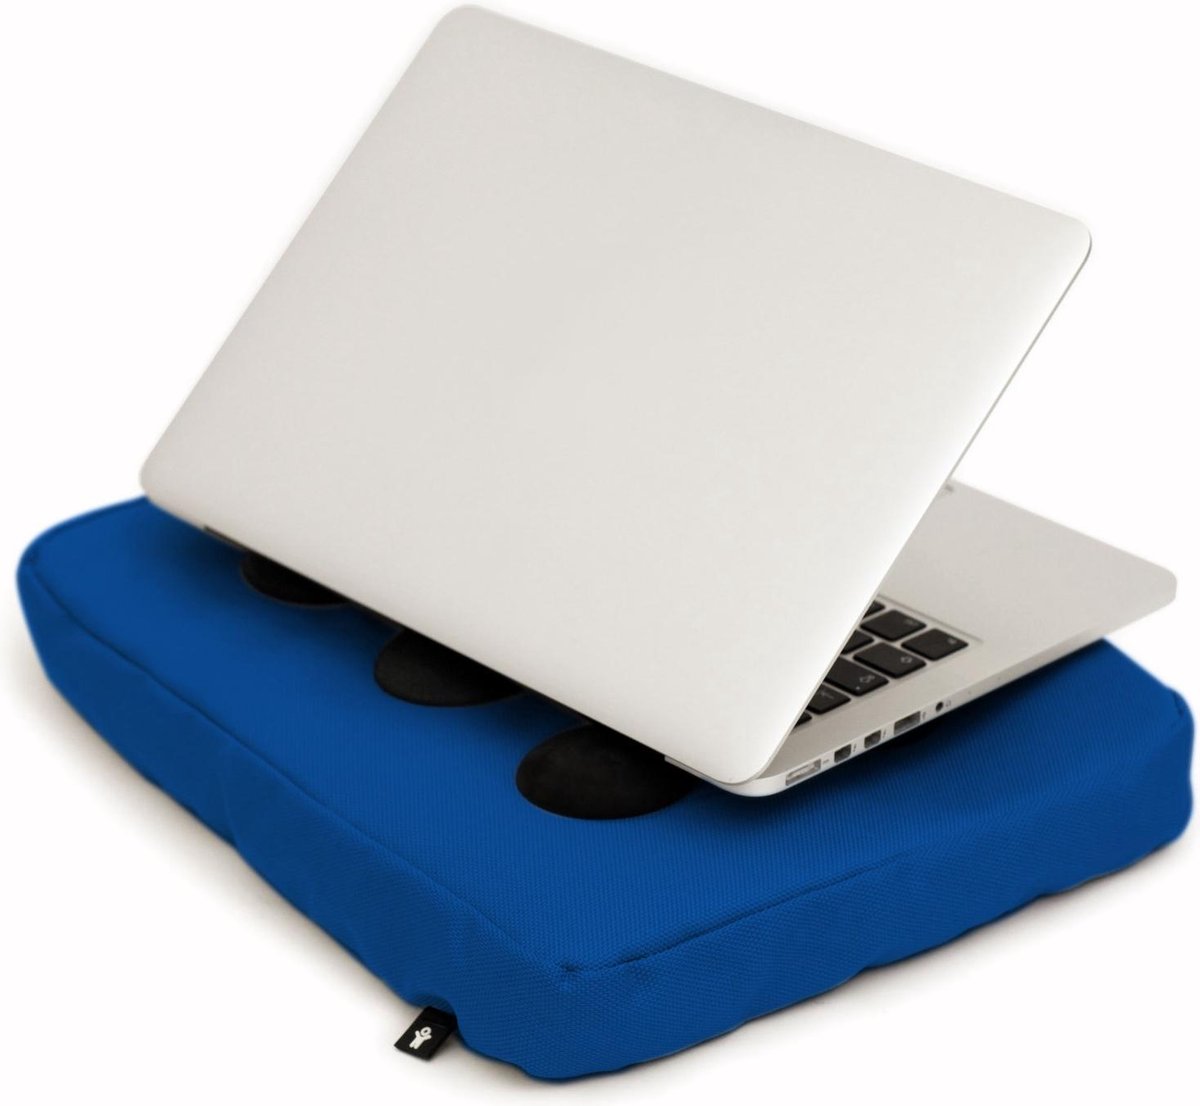 Bosign laptopkussen, laptop kussen, laptop schootkussen, laptop standaard, met siliconen doppen voor warme luchtafvoer - Blauw